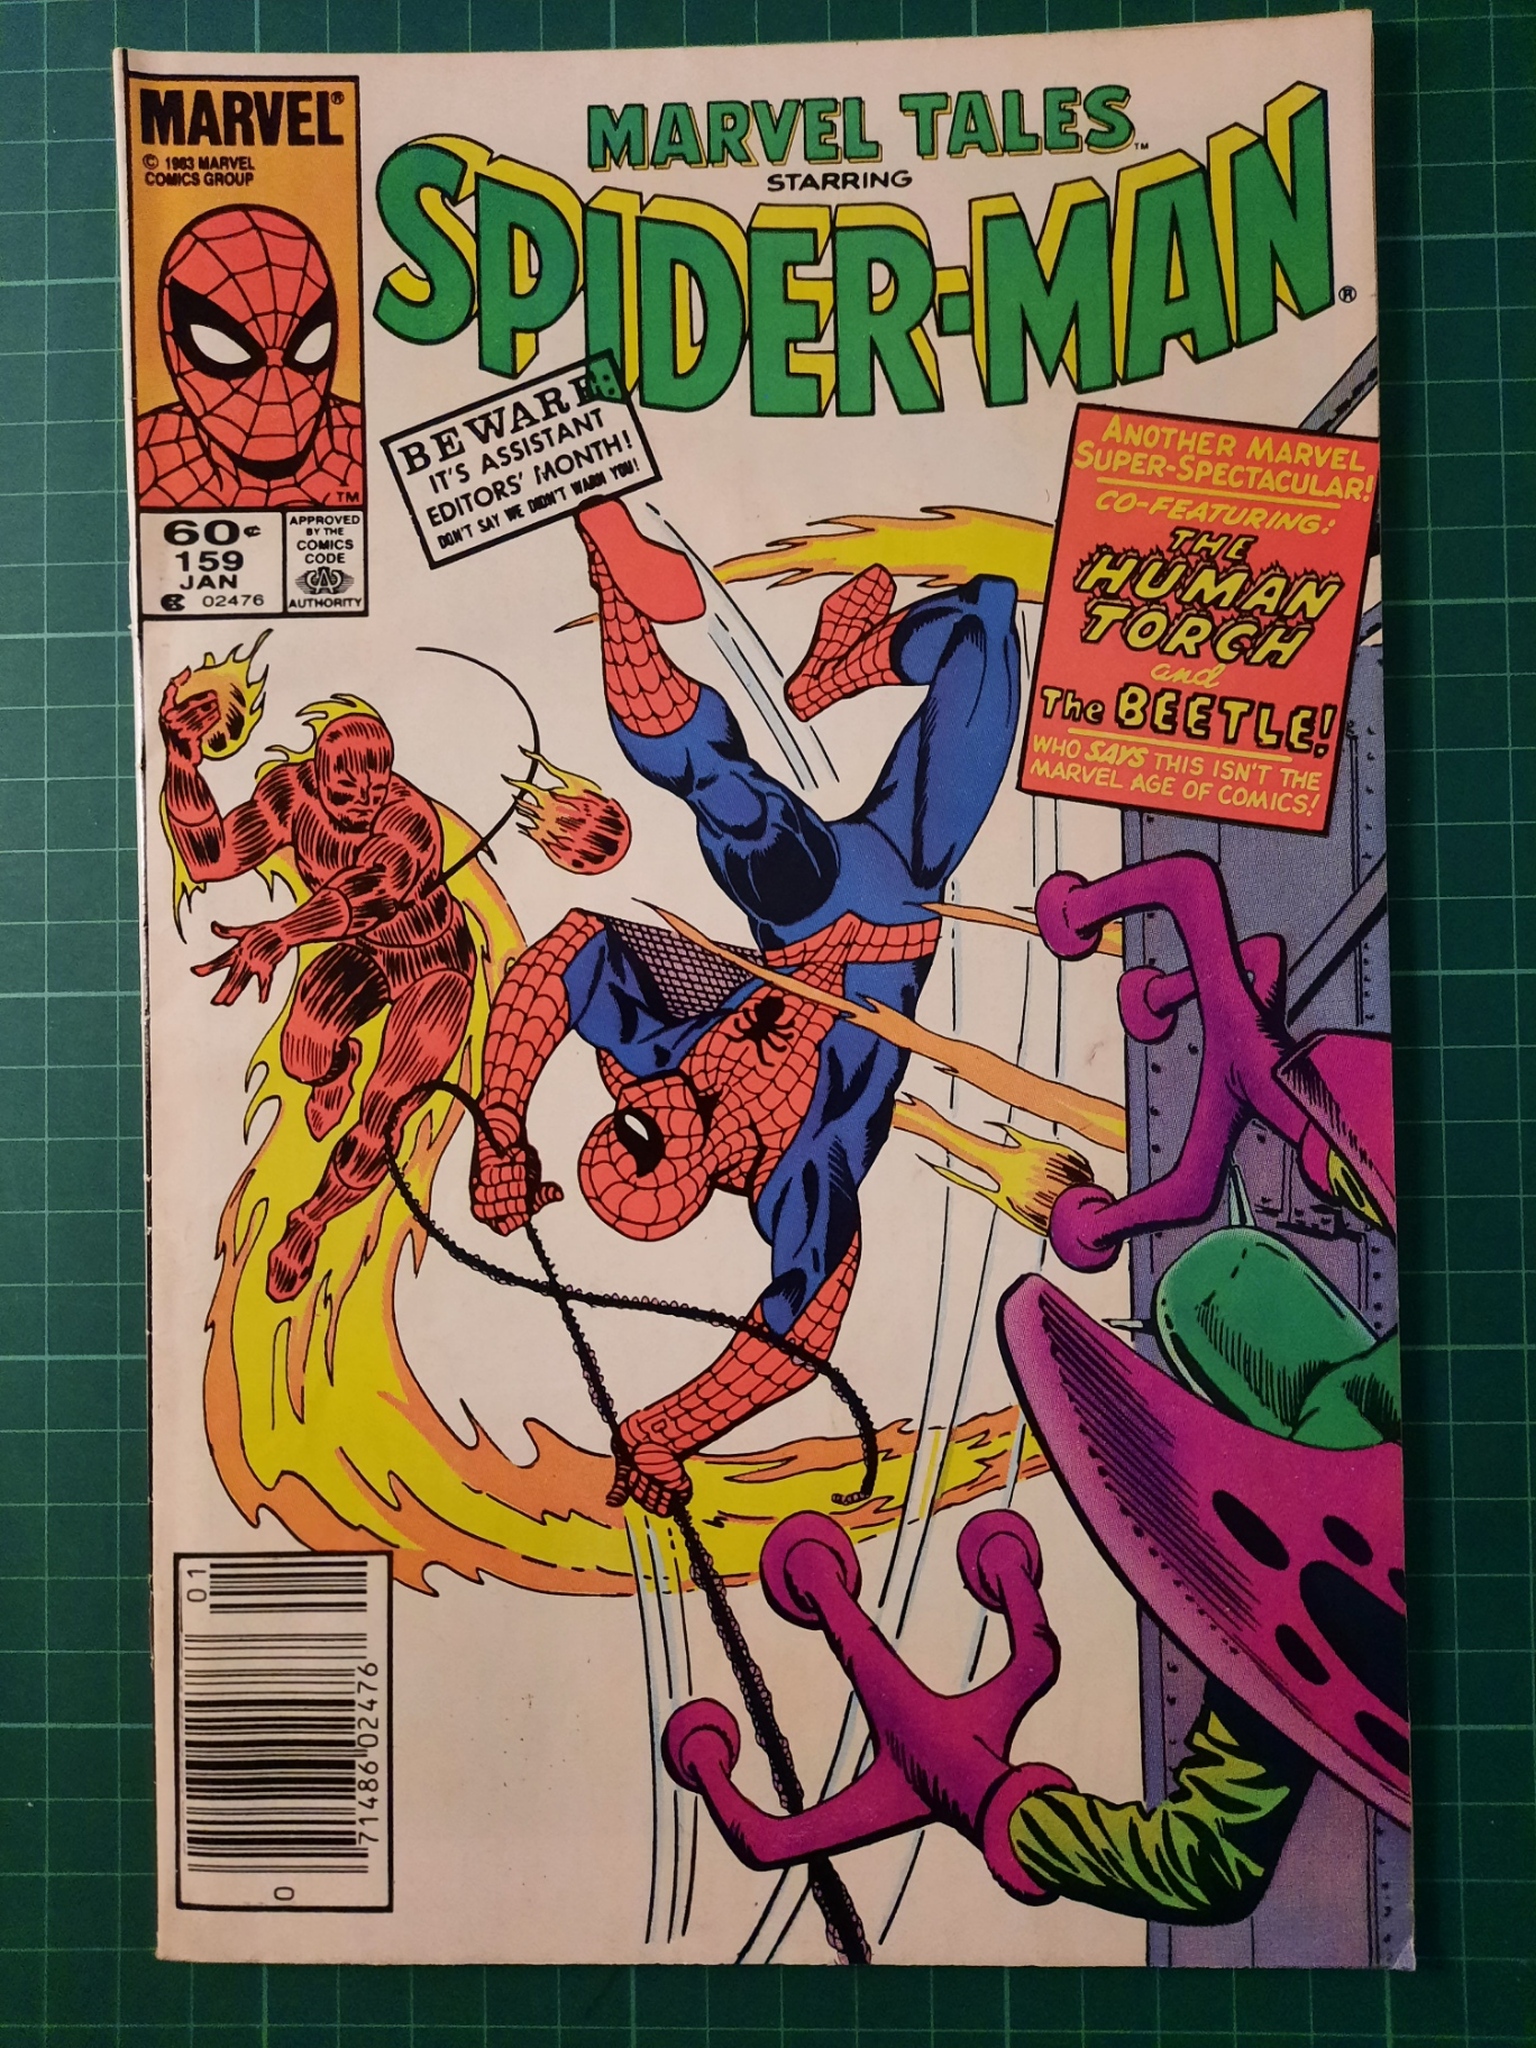 Marvel Tales #159 Spider-Man